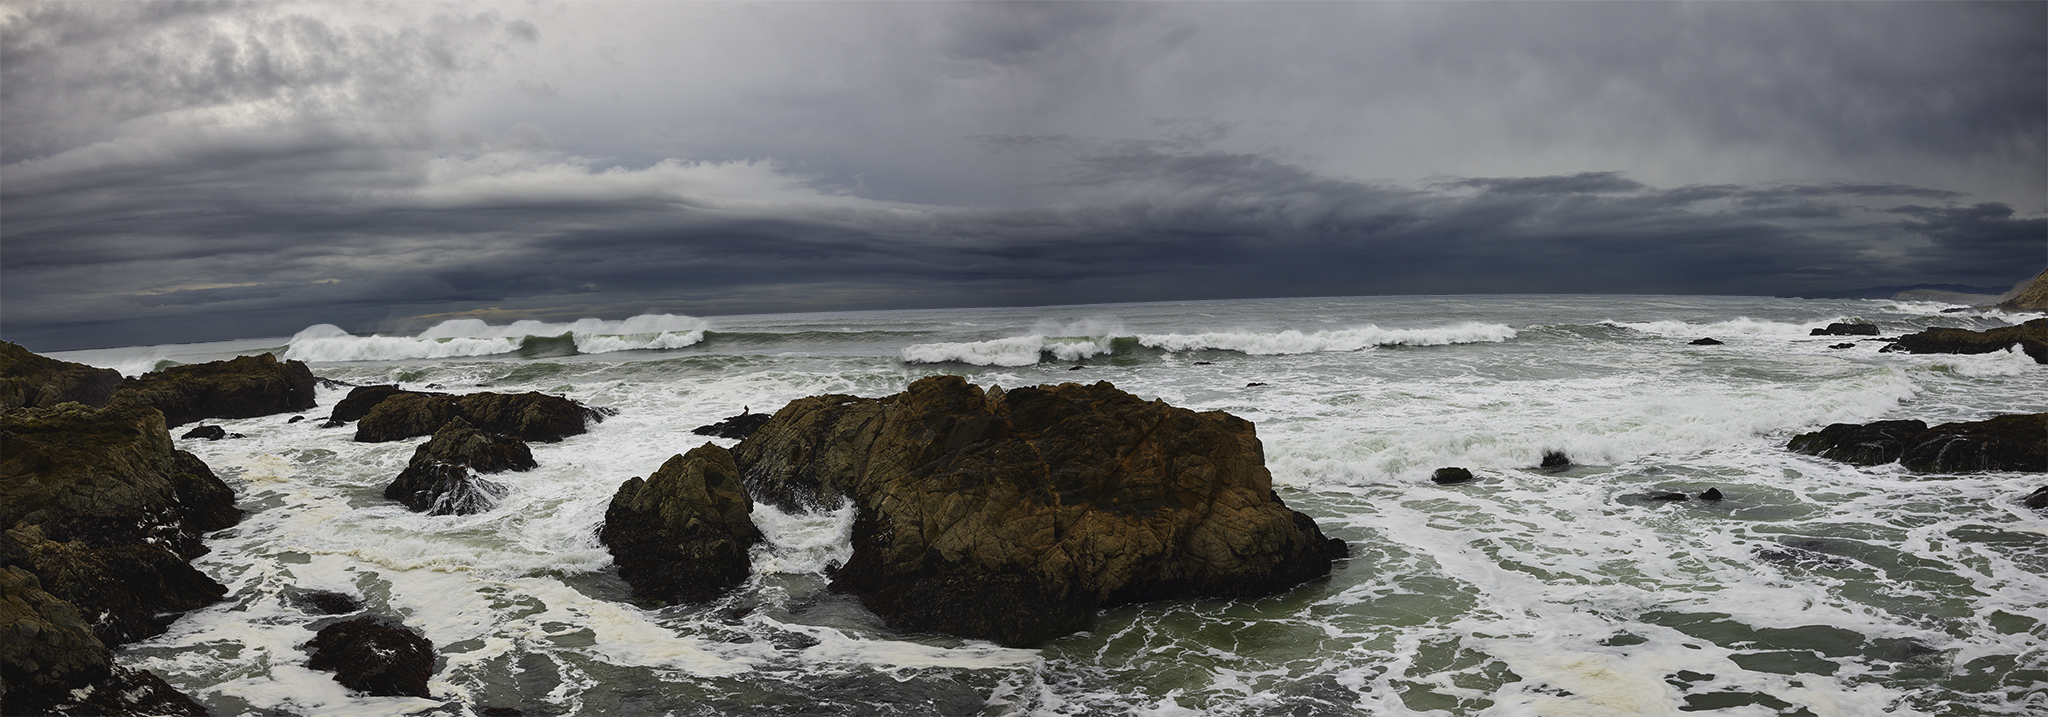 Bodega Head, California Coast